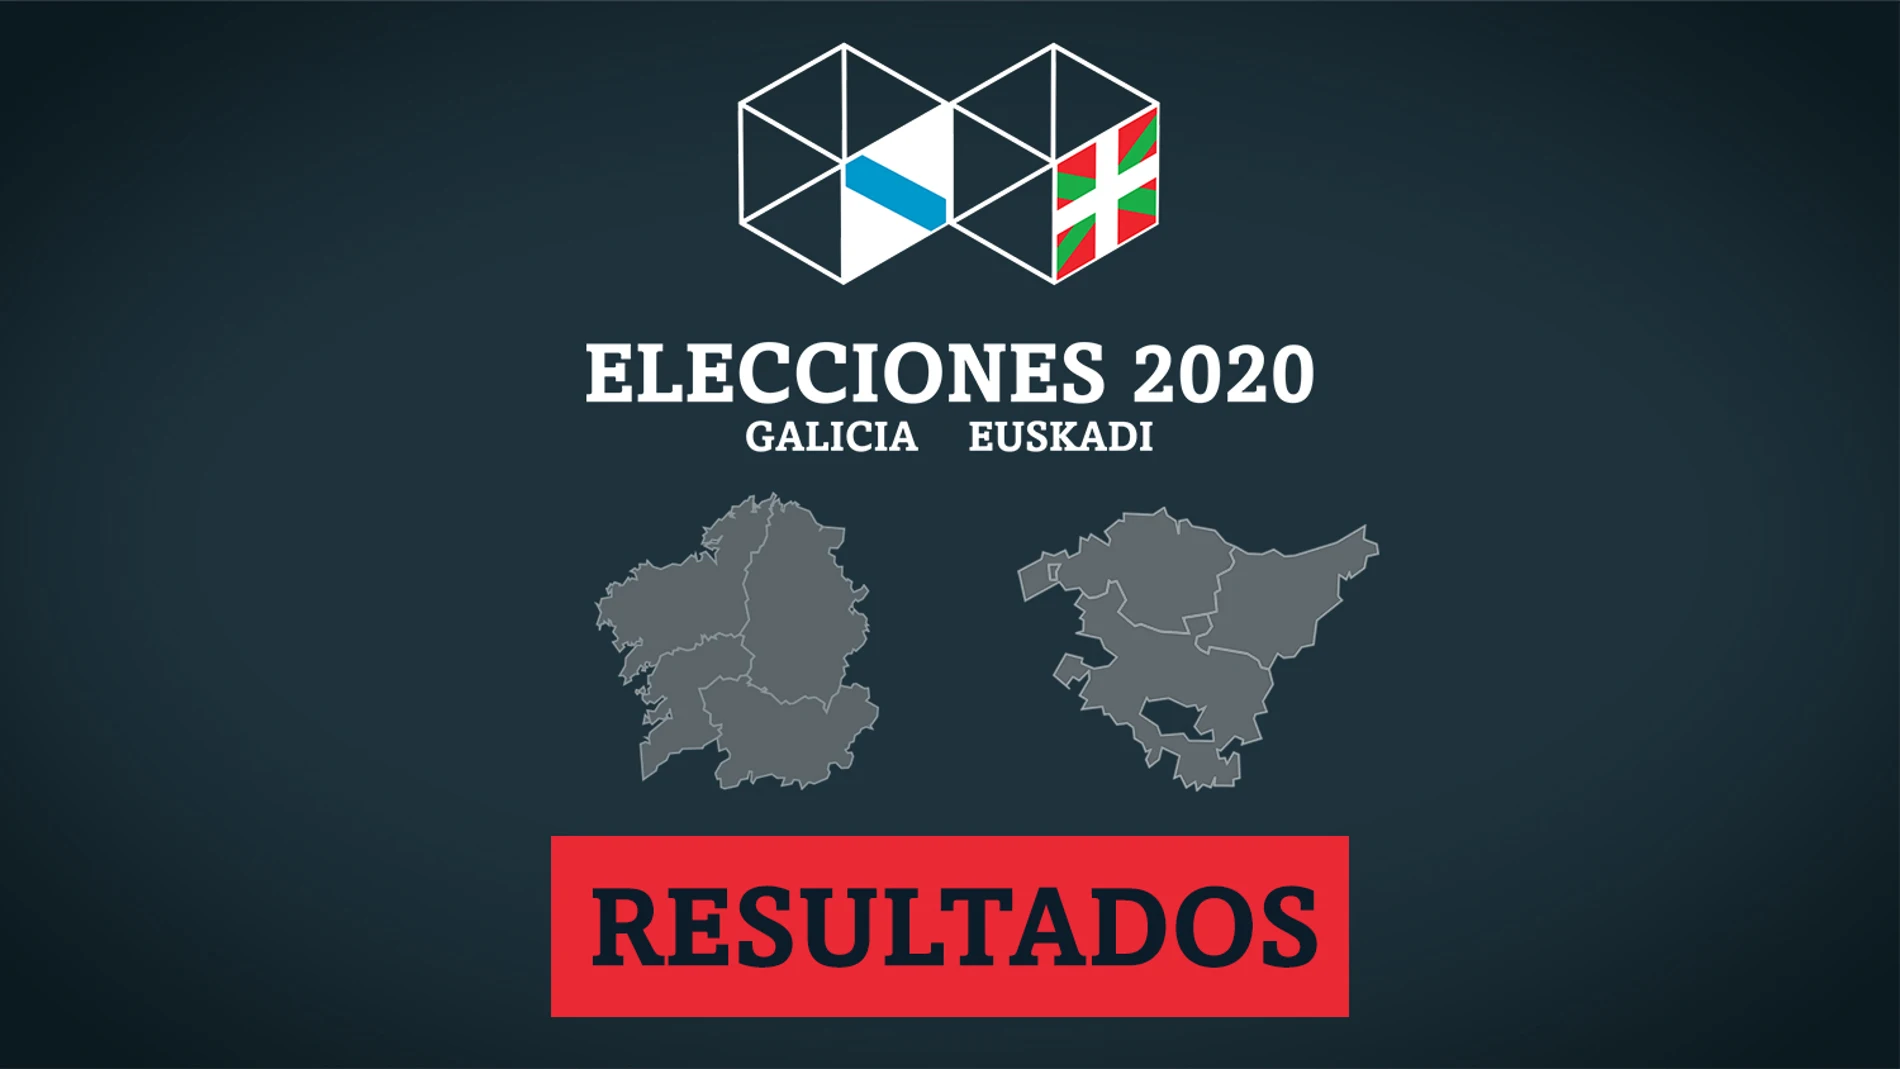 Resultado y escrutinio de las elecciones en Galicia y País Vasco del 12 de junio del 2020